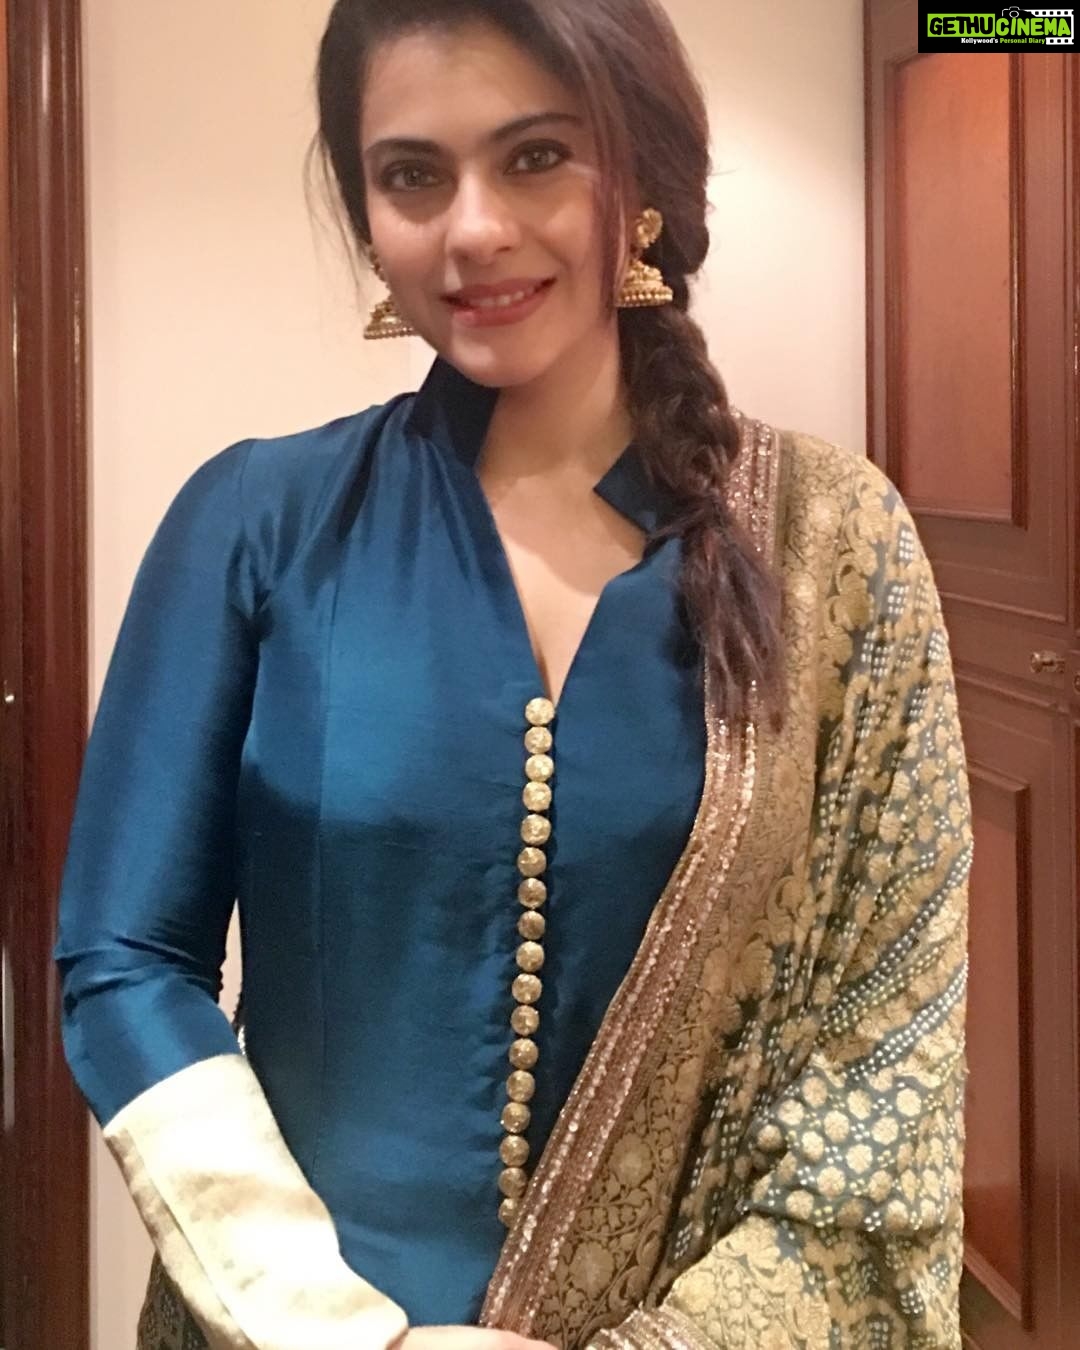 Actress Kajol Instagram Photos and Posts November 2016 - Gethu Cinema